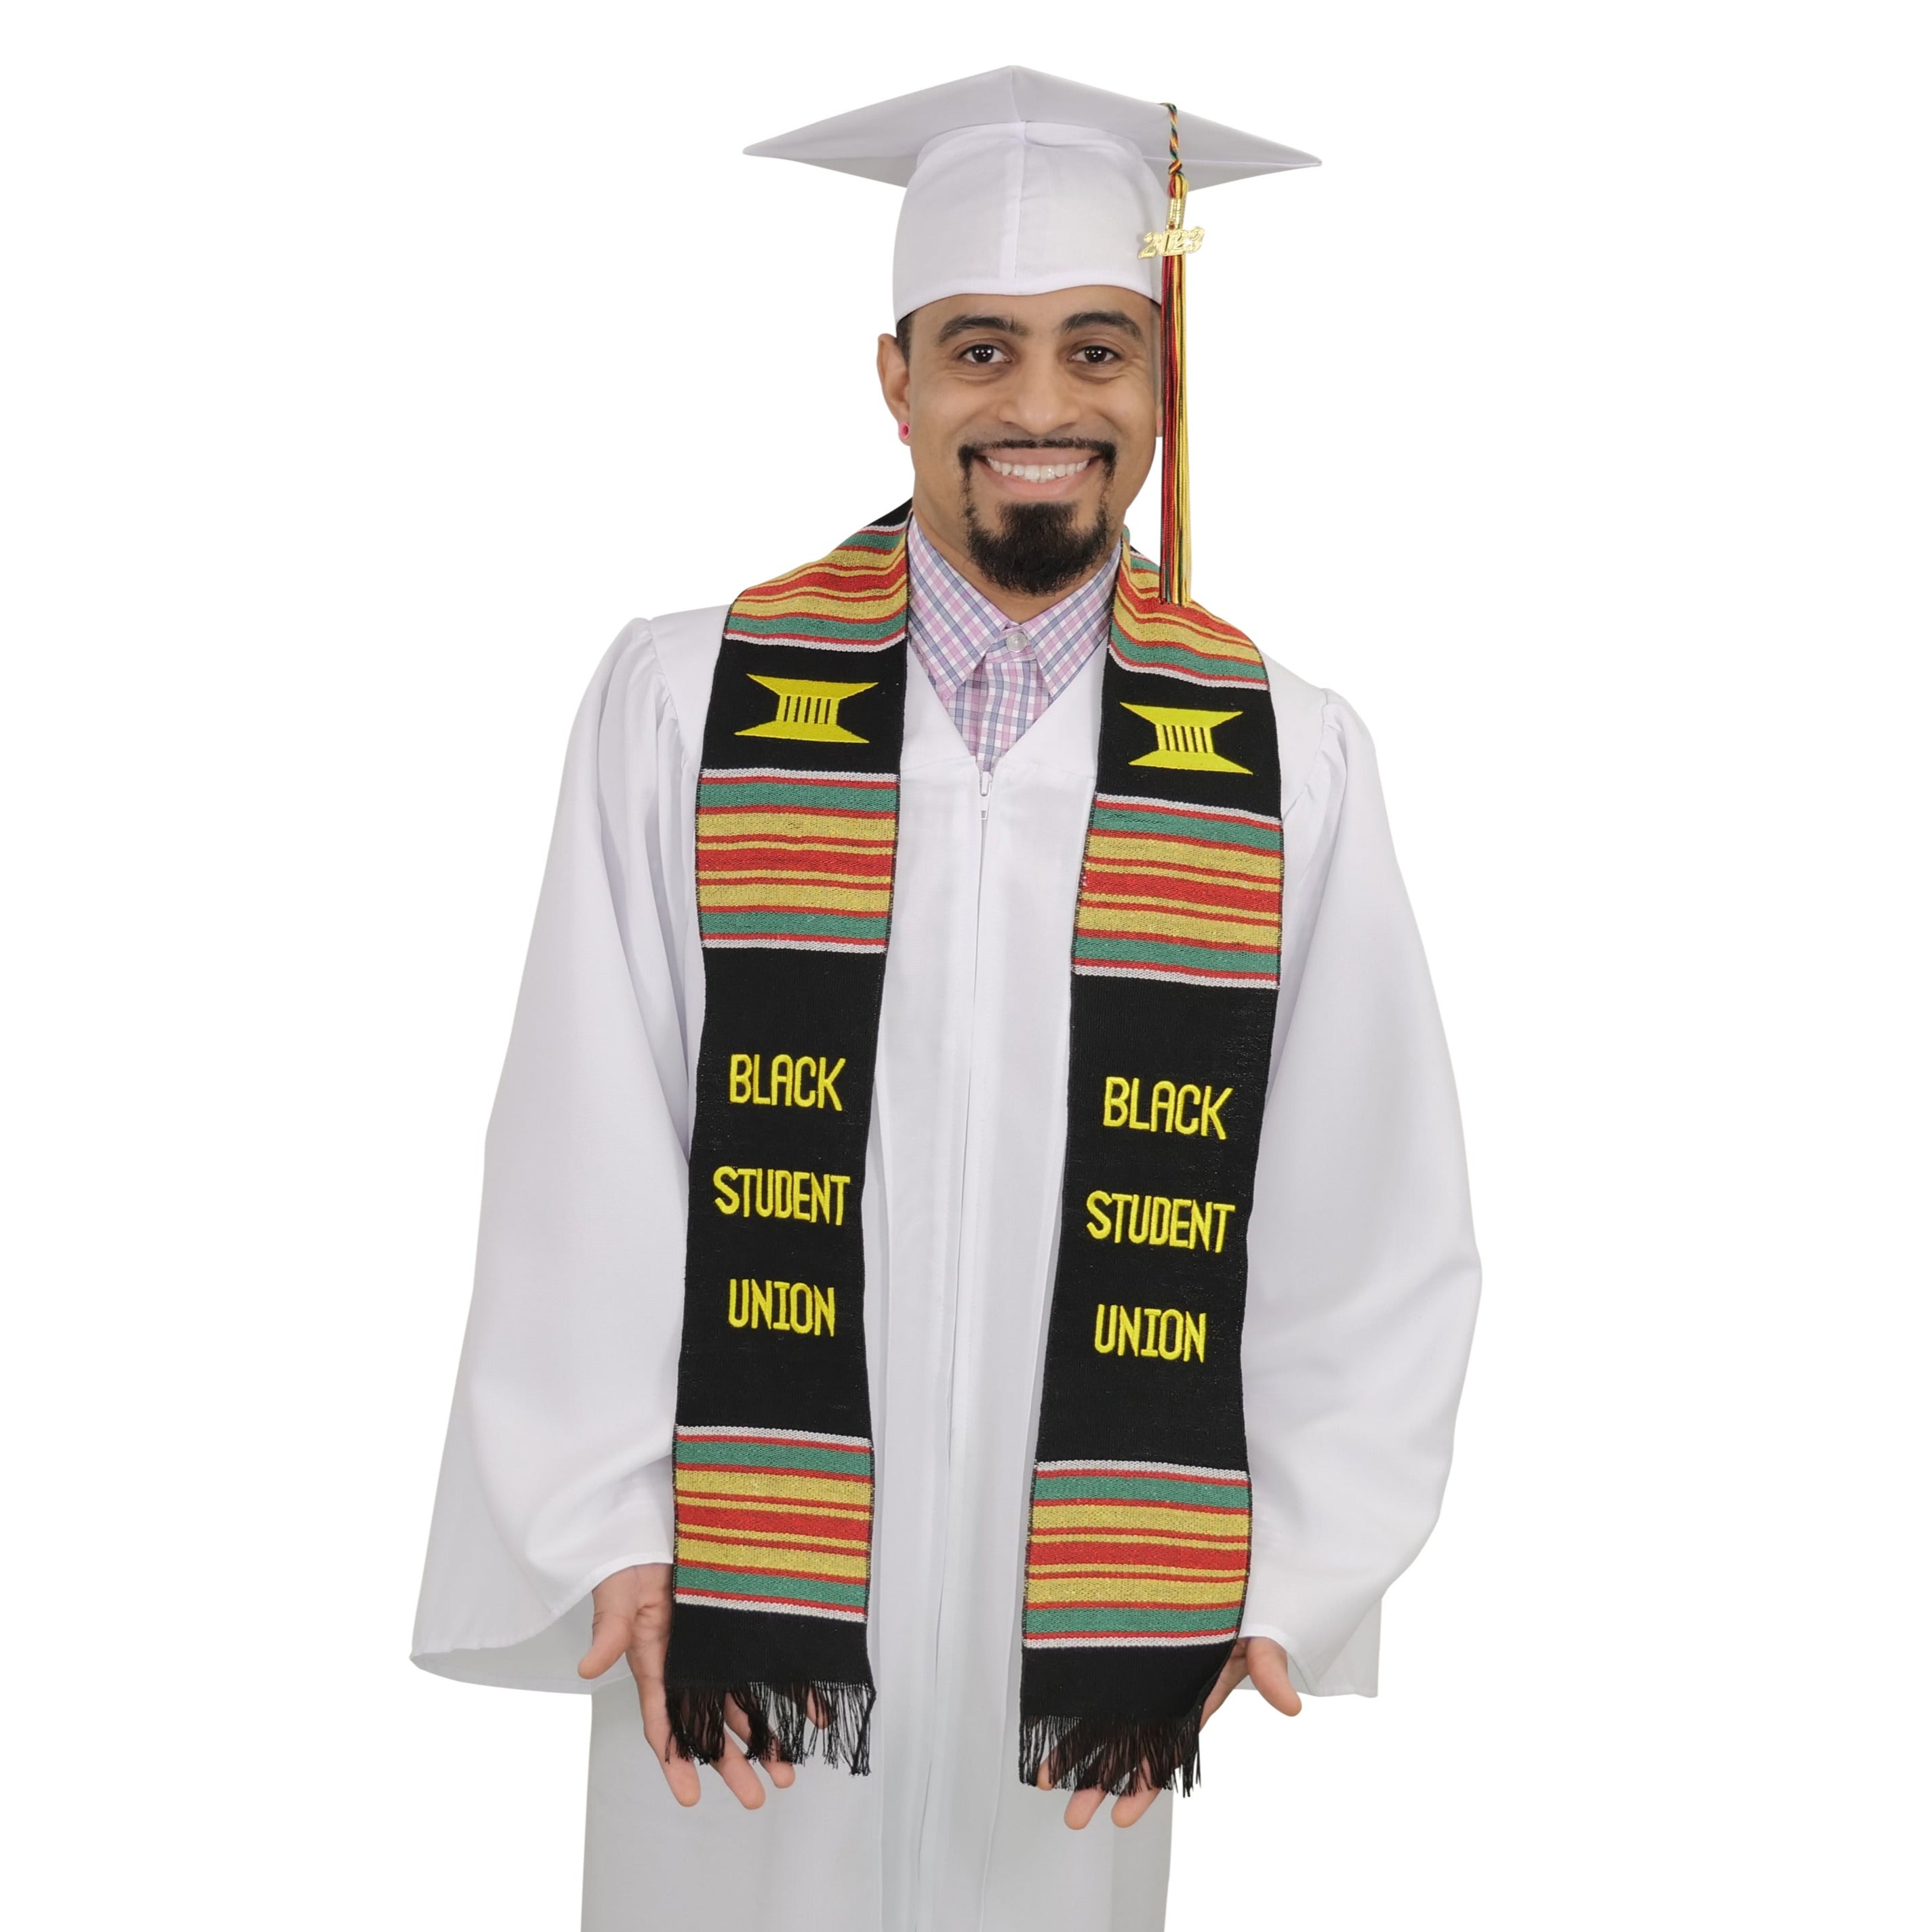 Black Student Union Graduation Kente Stole, Handwoven Kente Sash Cloth –  Graduation Cap and Gown